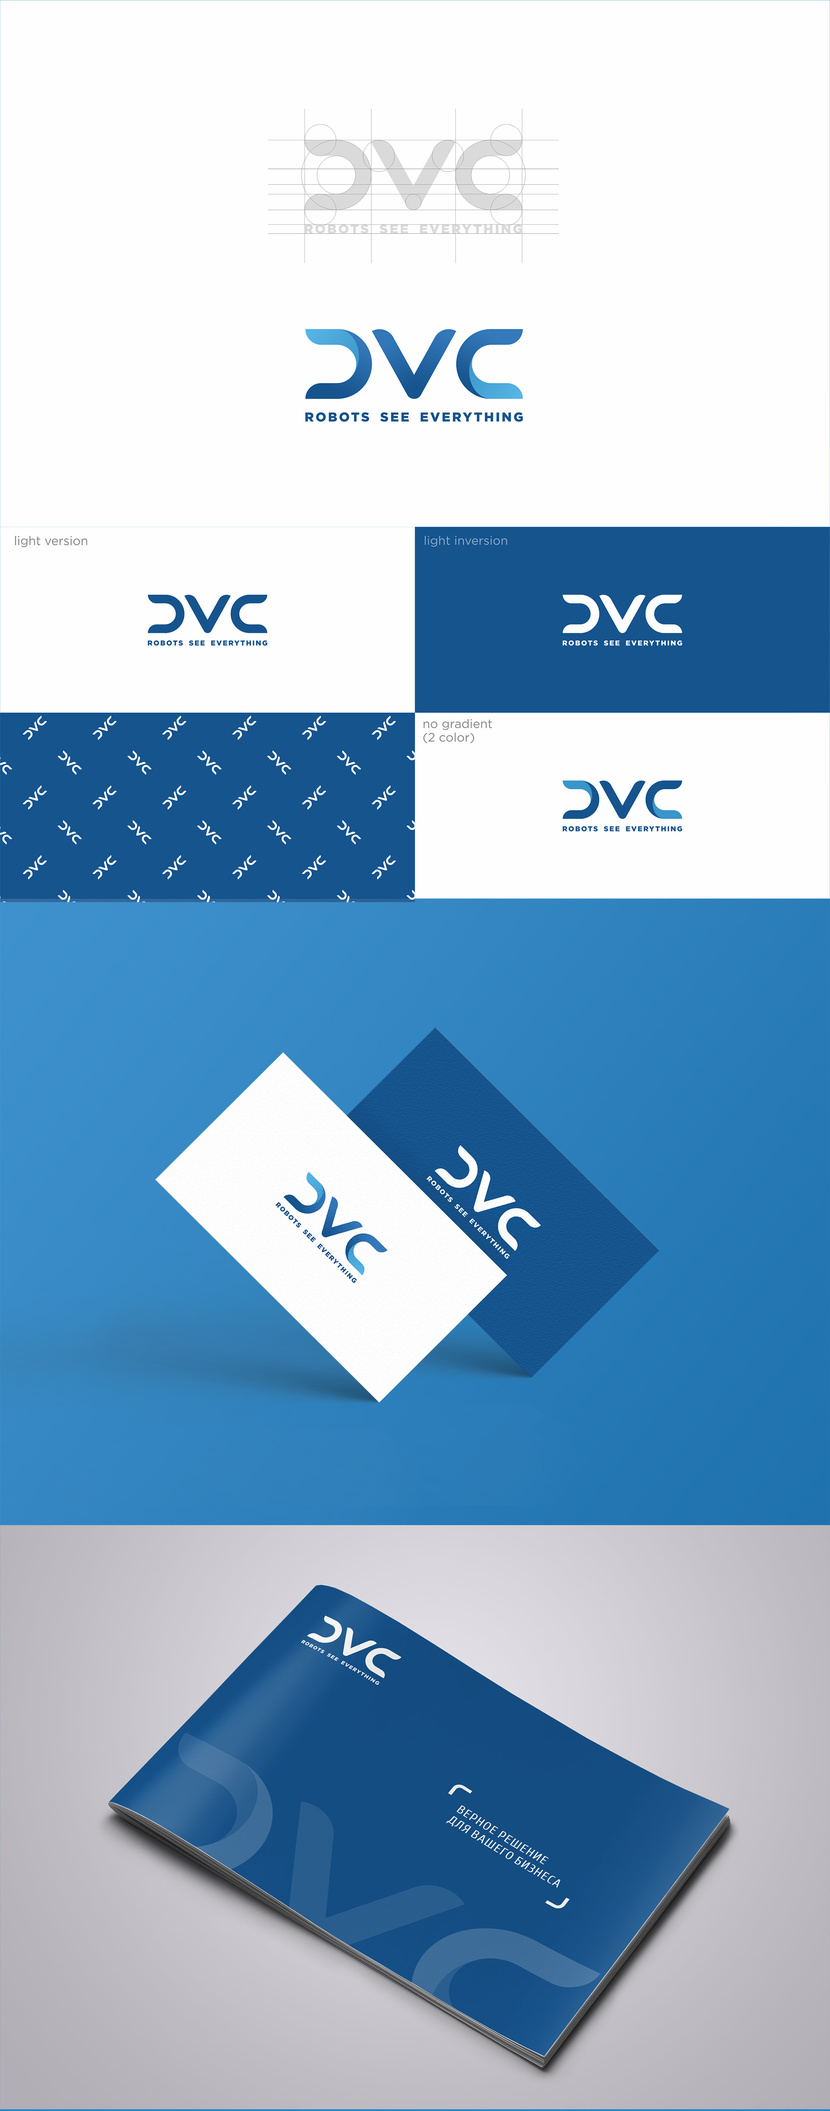 Создание логотипа и фирменного стиля для бренда системы событийного видеоконтроля CVC ( Cyber Vision Control  )